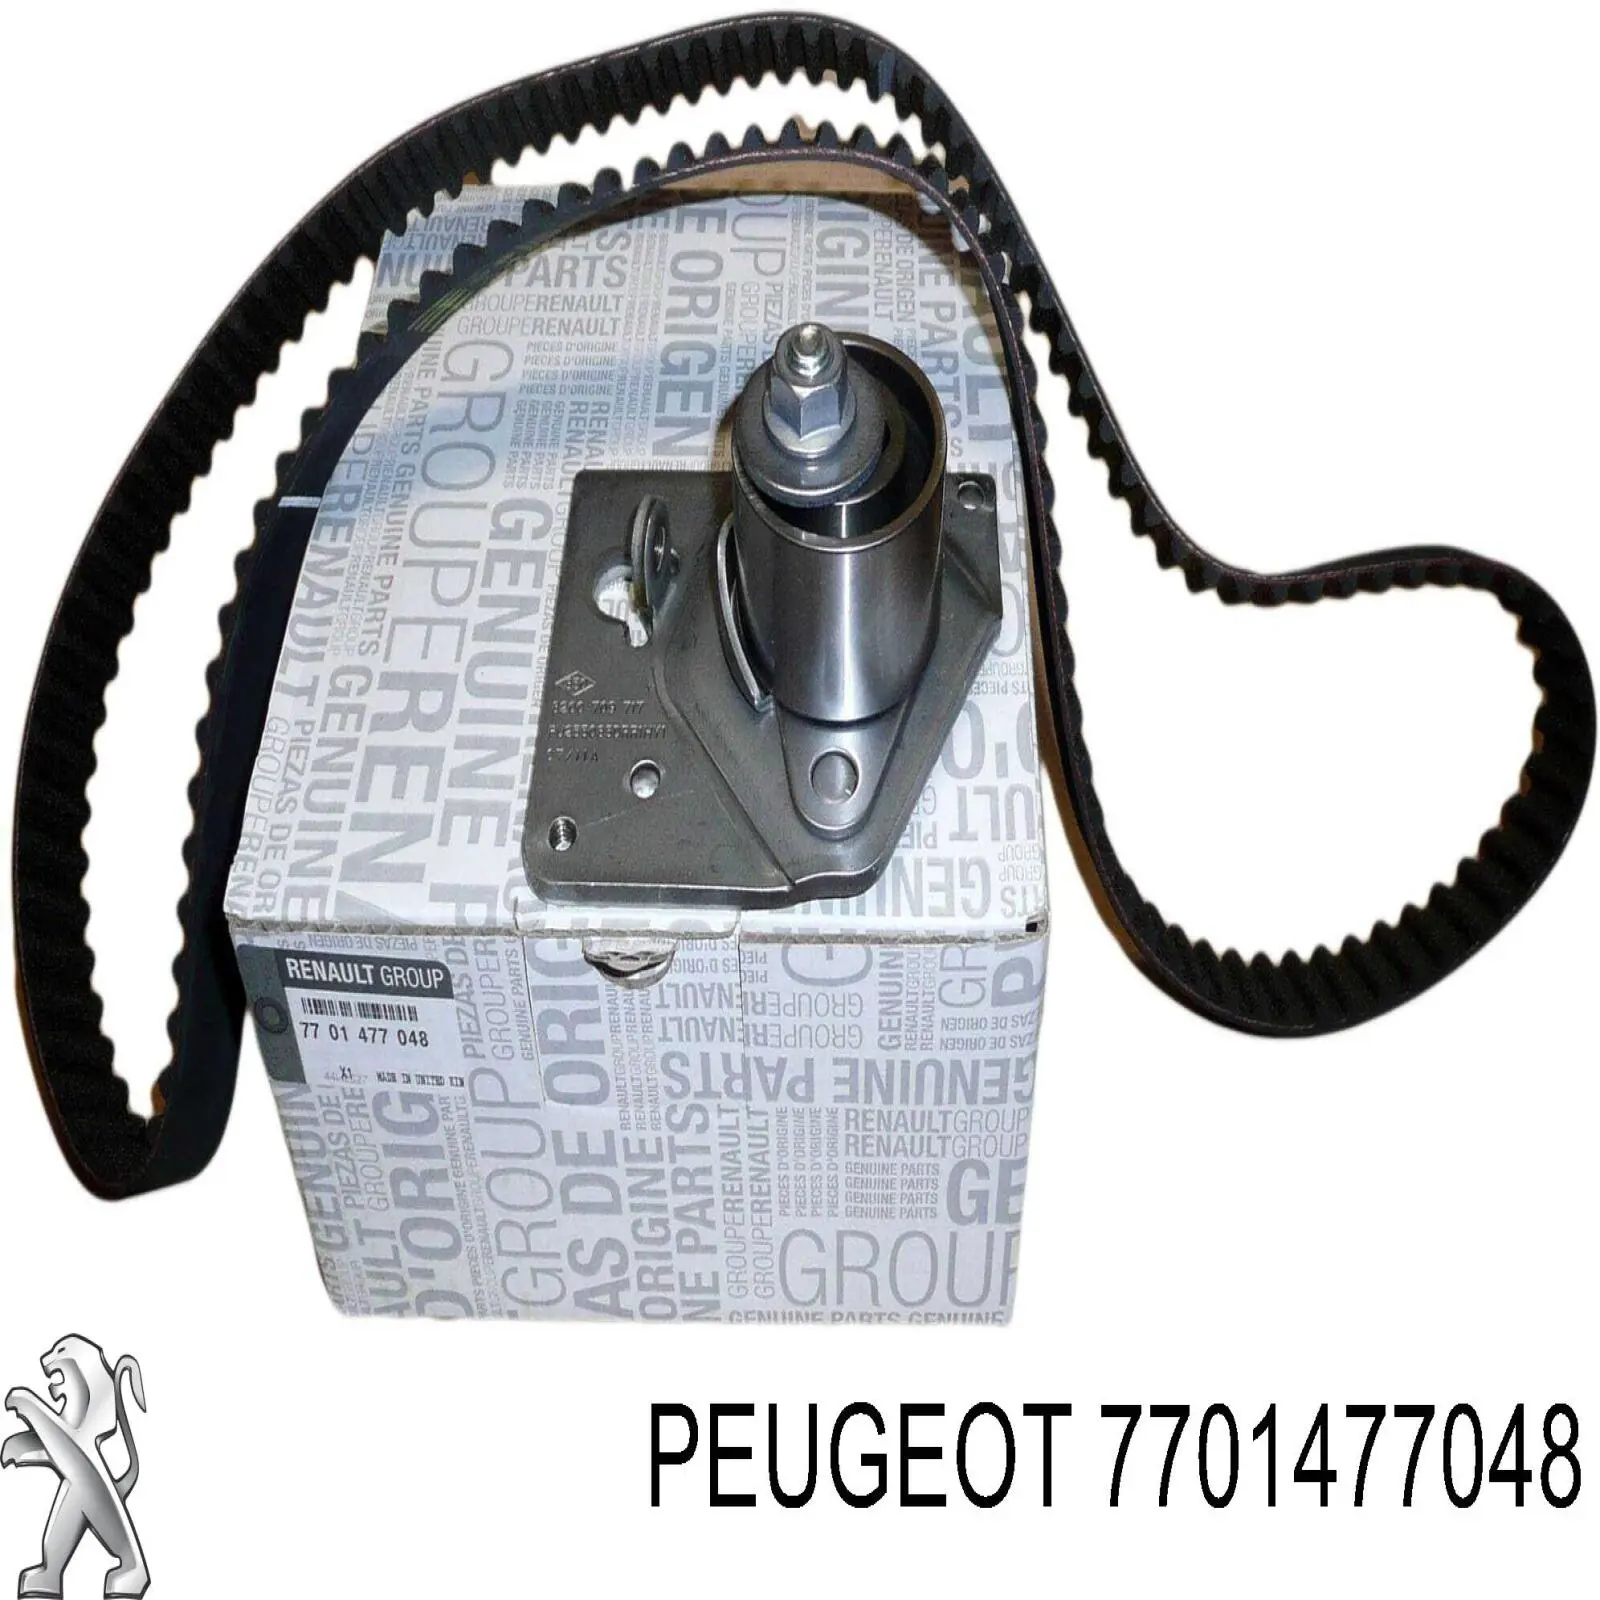 7701477048 Peugeot/Citroen kit de distribución